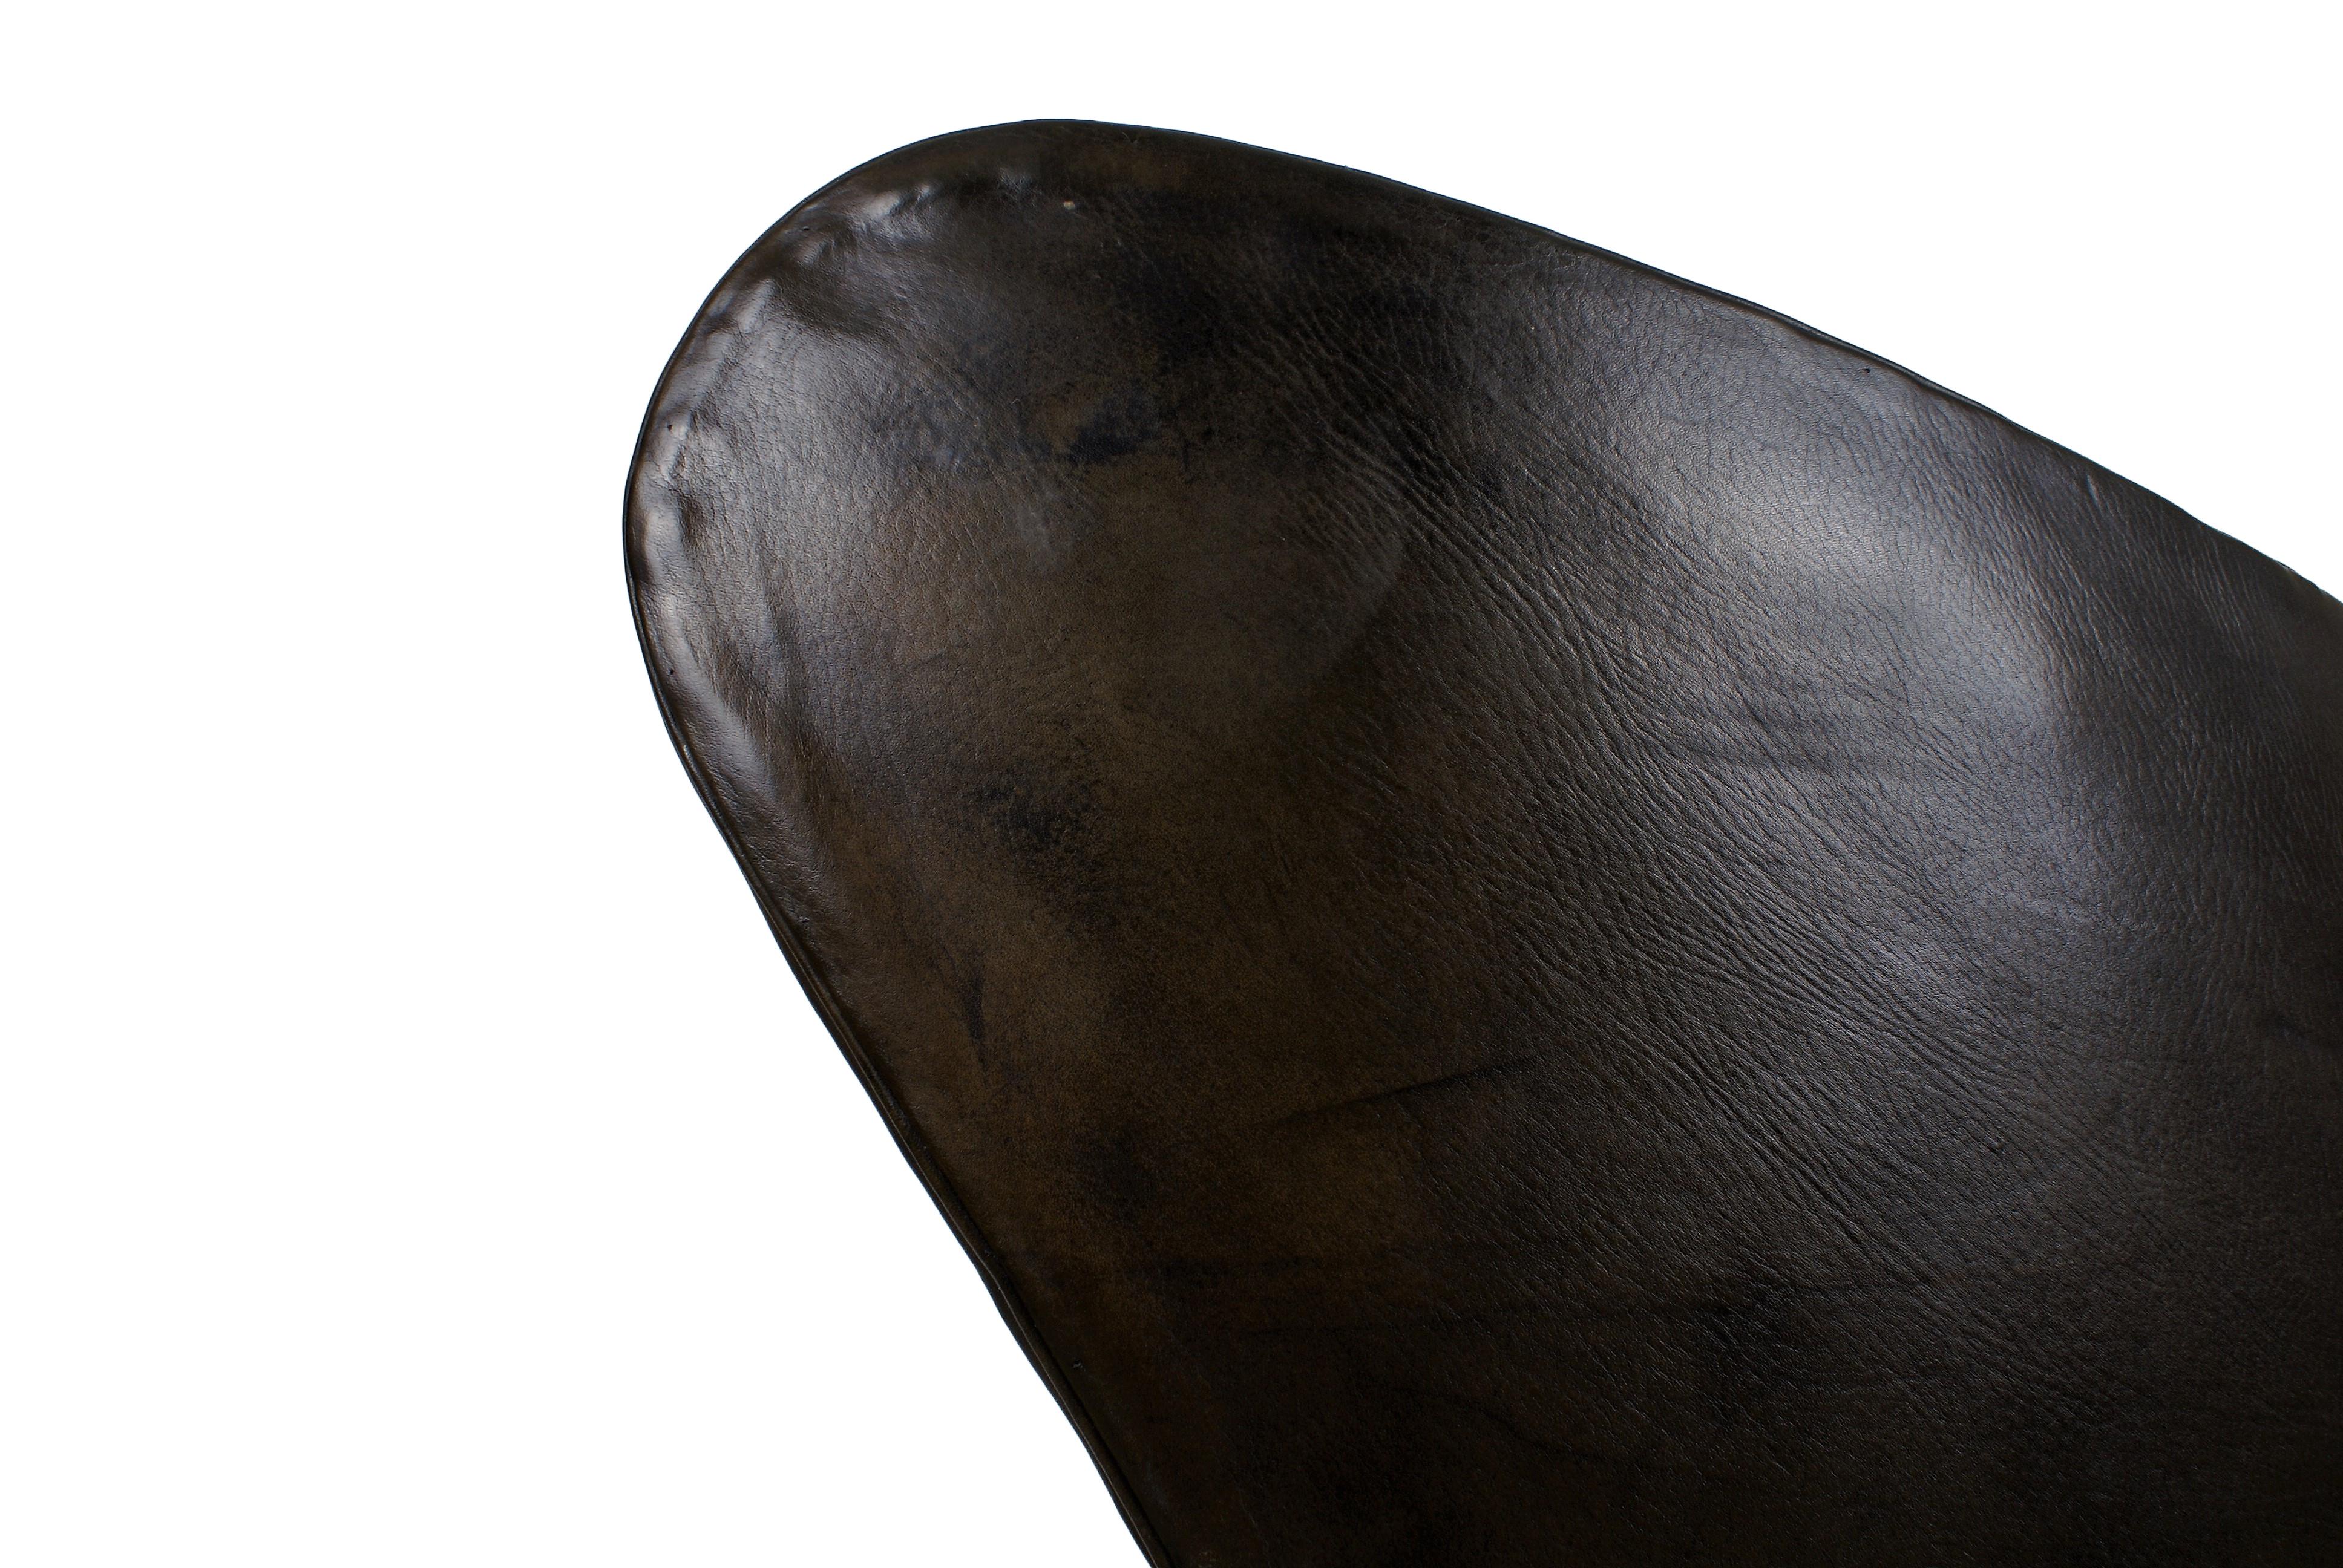 Arne Jacobsen, fauteuil oeuf de début de carrière en cuir noir patiné d'origine. De la première production avec un siège construit et sans coussin, estampillé FH dans le cuir.

Excellent état, sans fissures ni trous dans le cuir.

La littérature